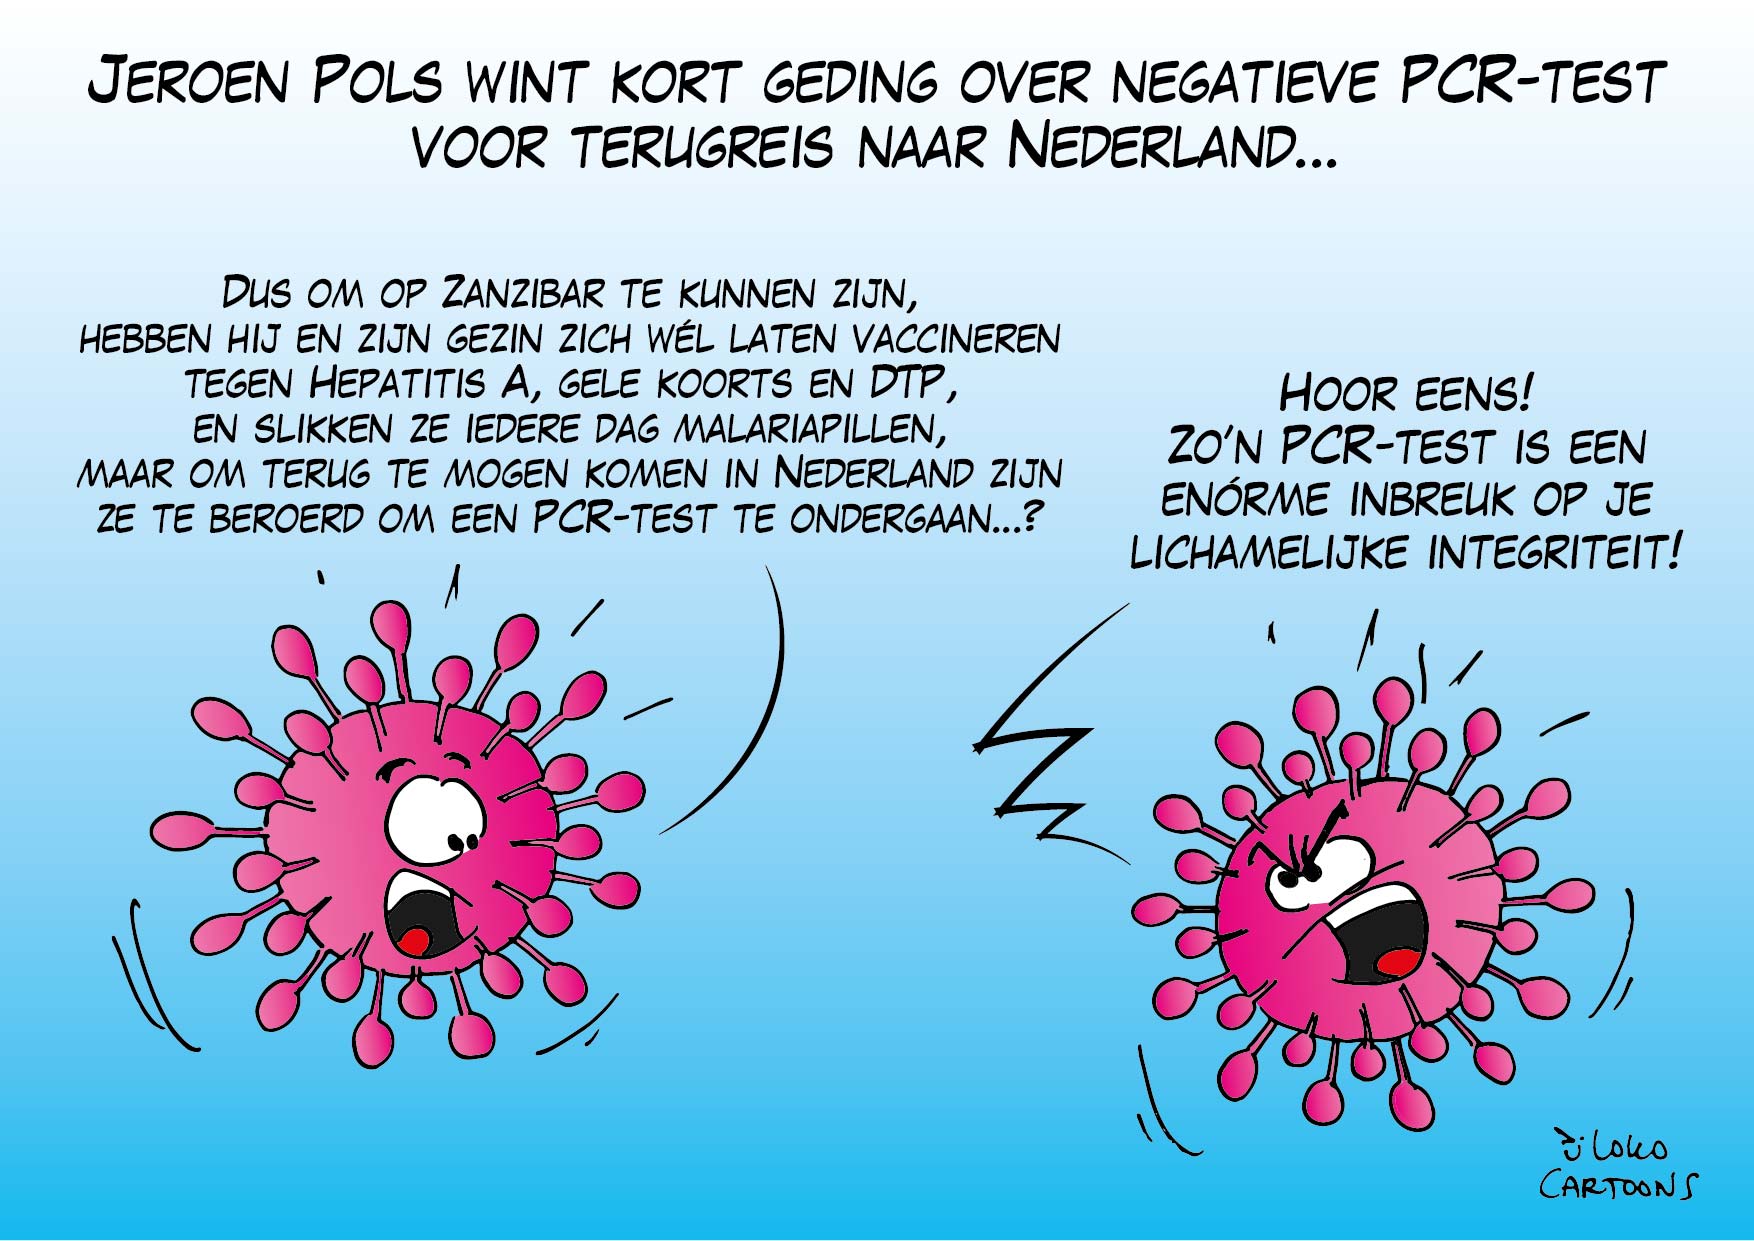 Jeroen Pols wint kort geding over negatieve PCR-test voor terugreis naar Nederland…